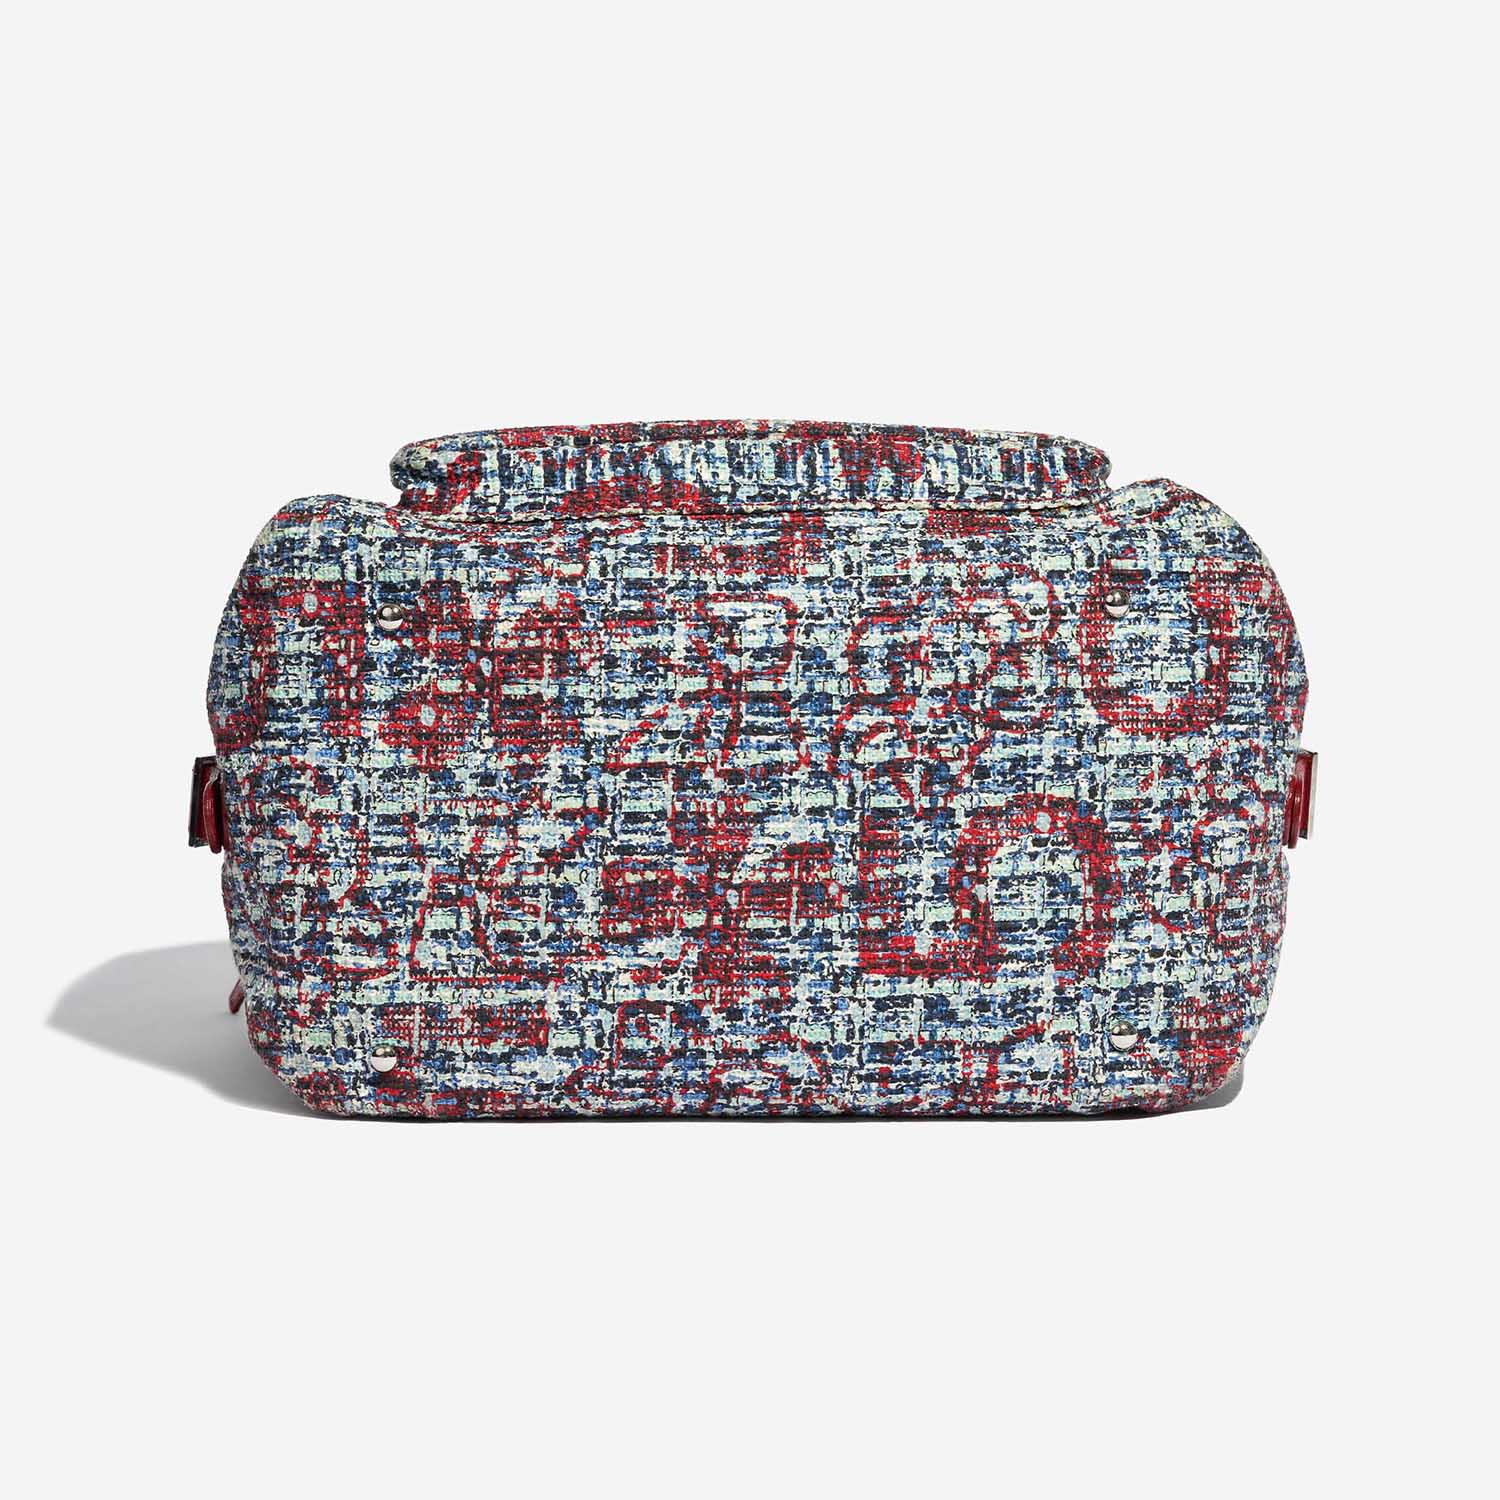 Pre-owned Chanel bag Duffle Bag Tweed Mixed Multicolour Bottom | Verkaufen Sie Ihre Designer-Tasche auf Saclab.com